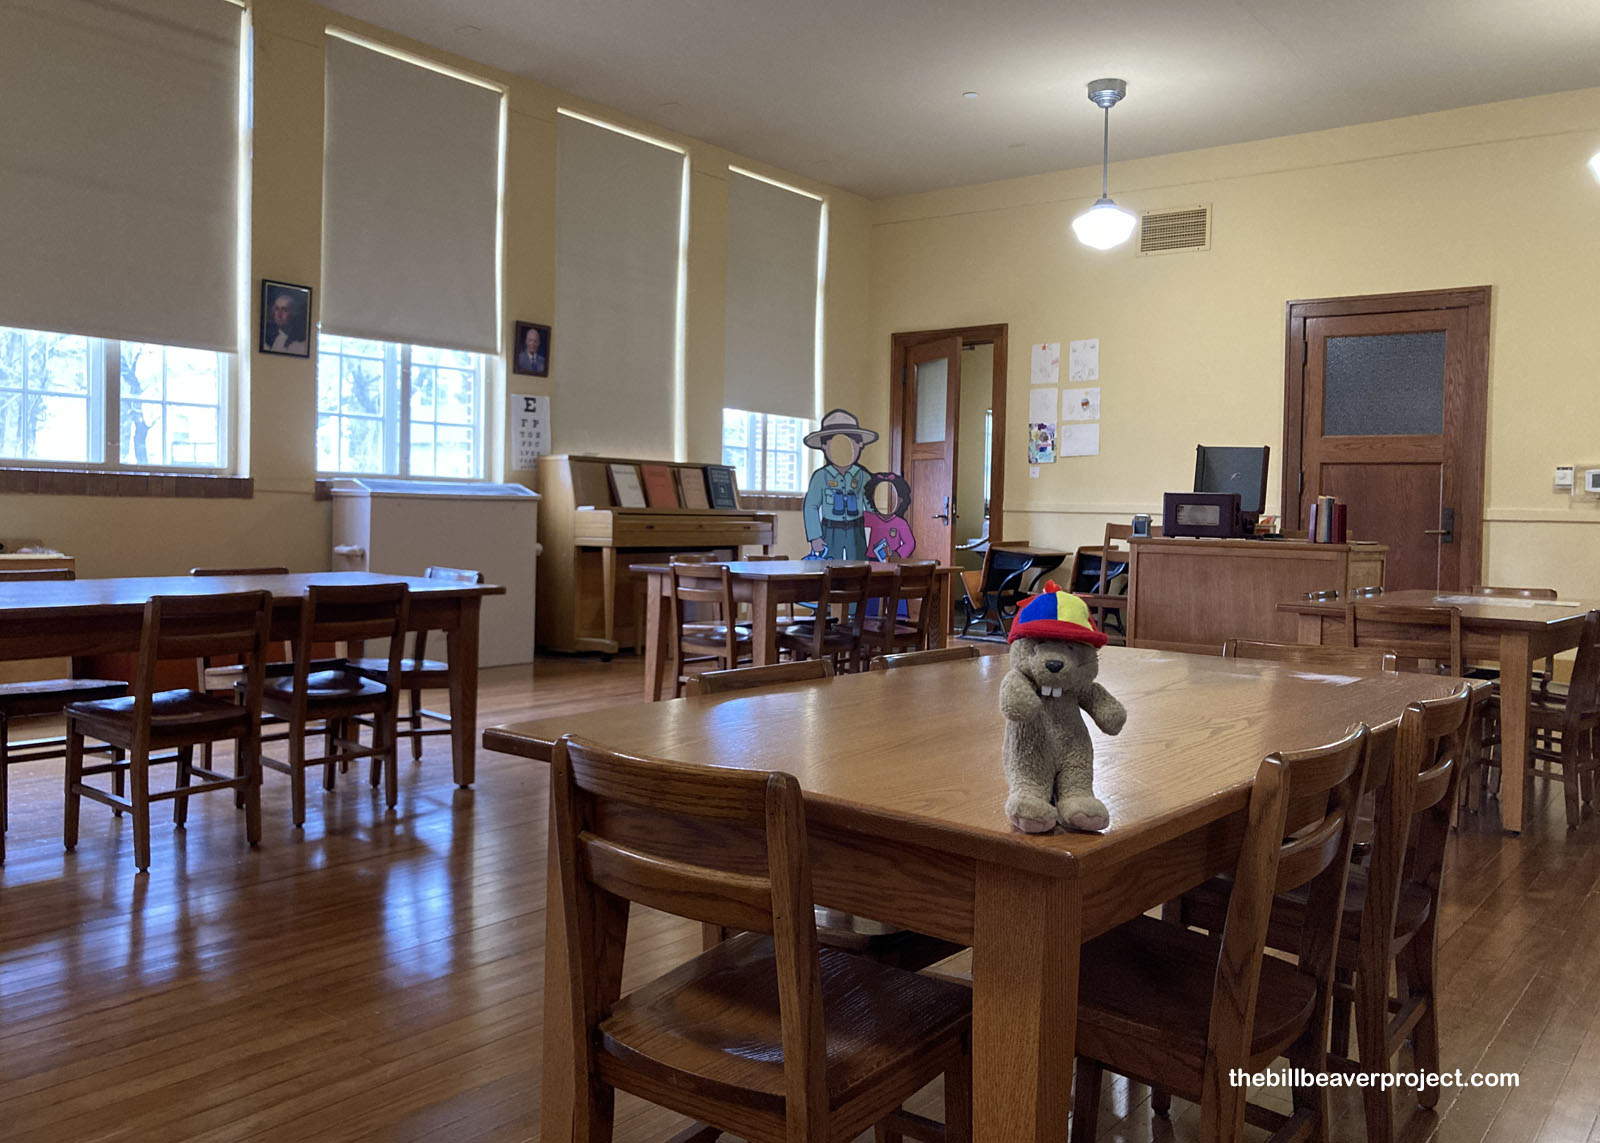 The school's preserved kindergarten room!